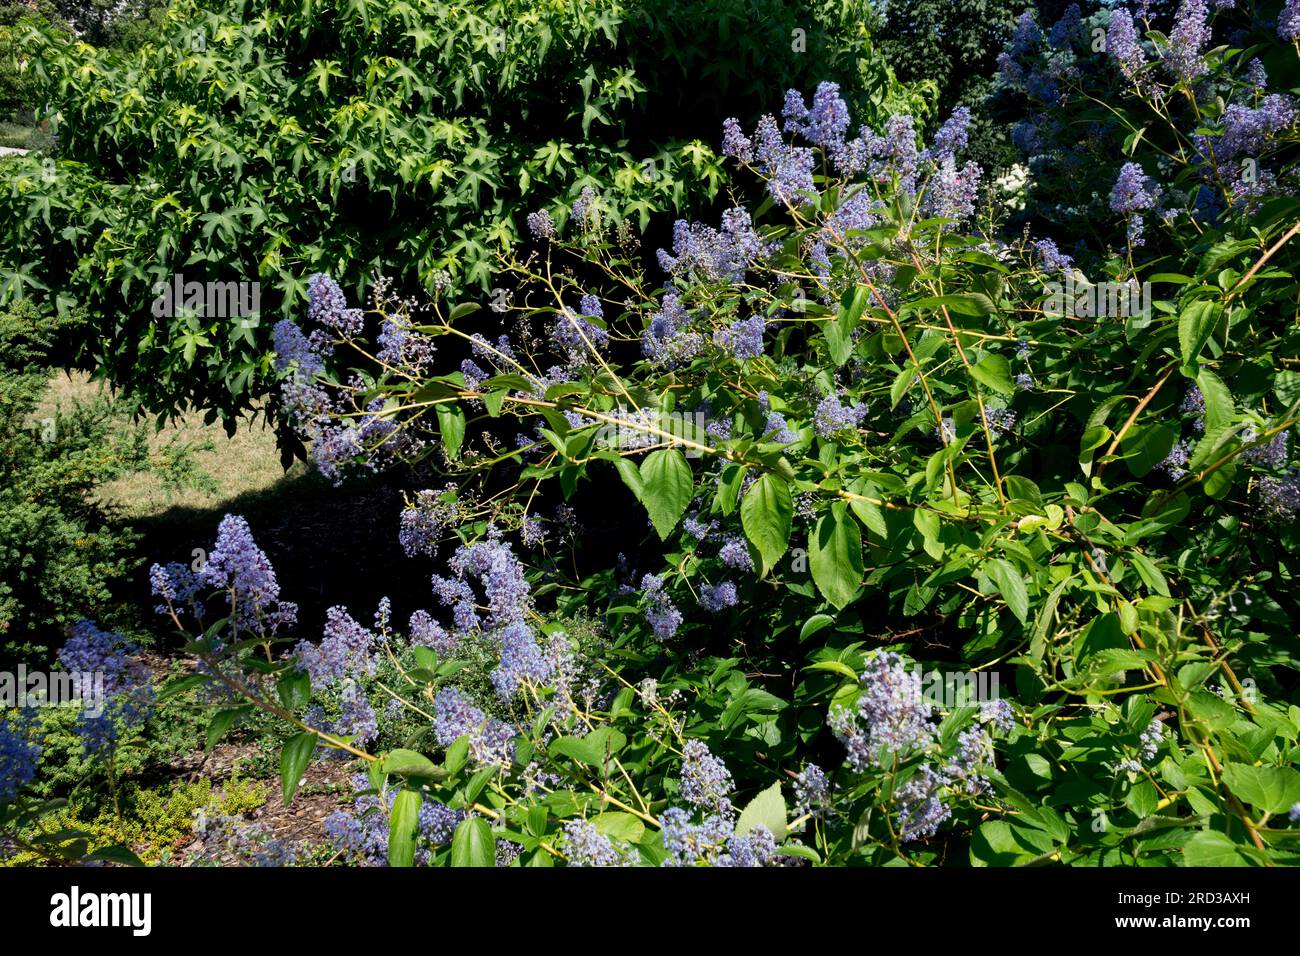 Ceanothus x delilianus,Ceanothus 'Gloire de Versailles' Flowering, Border, Garden Stock Photo